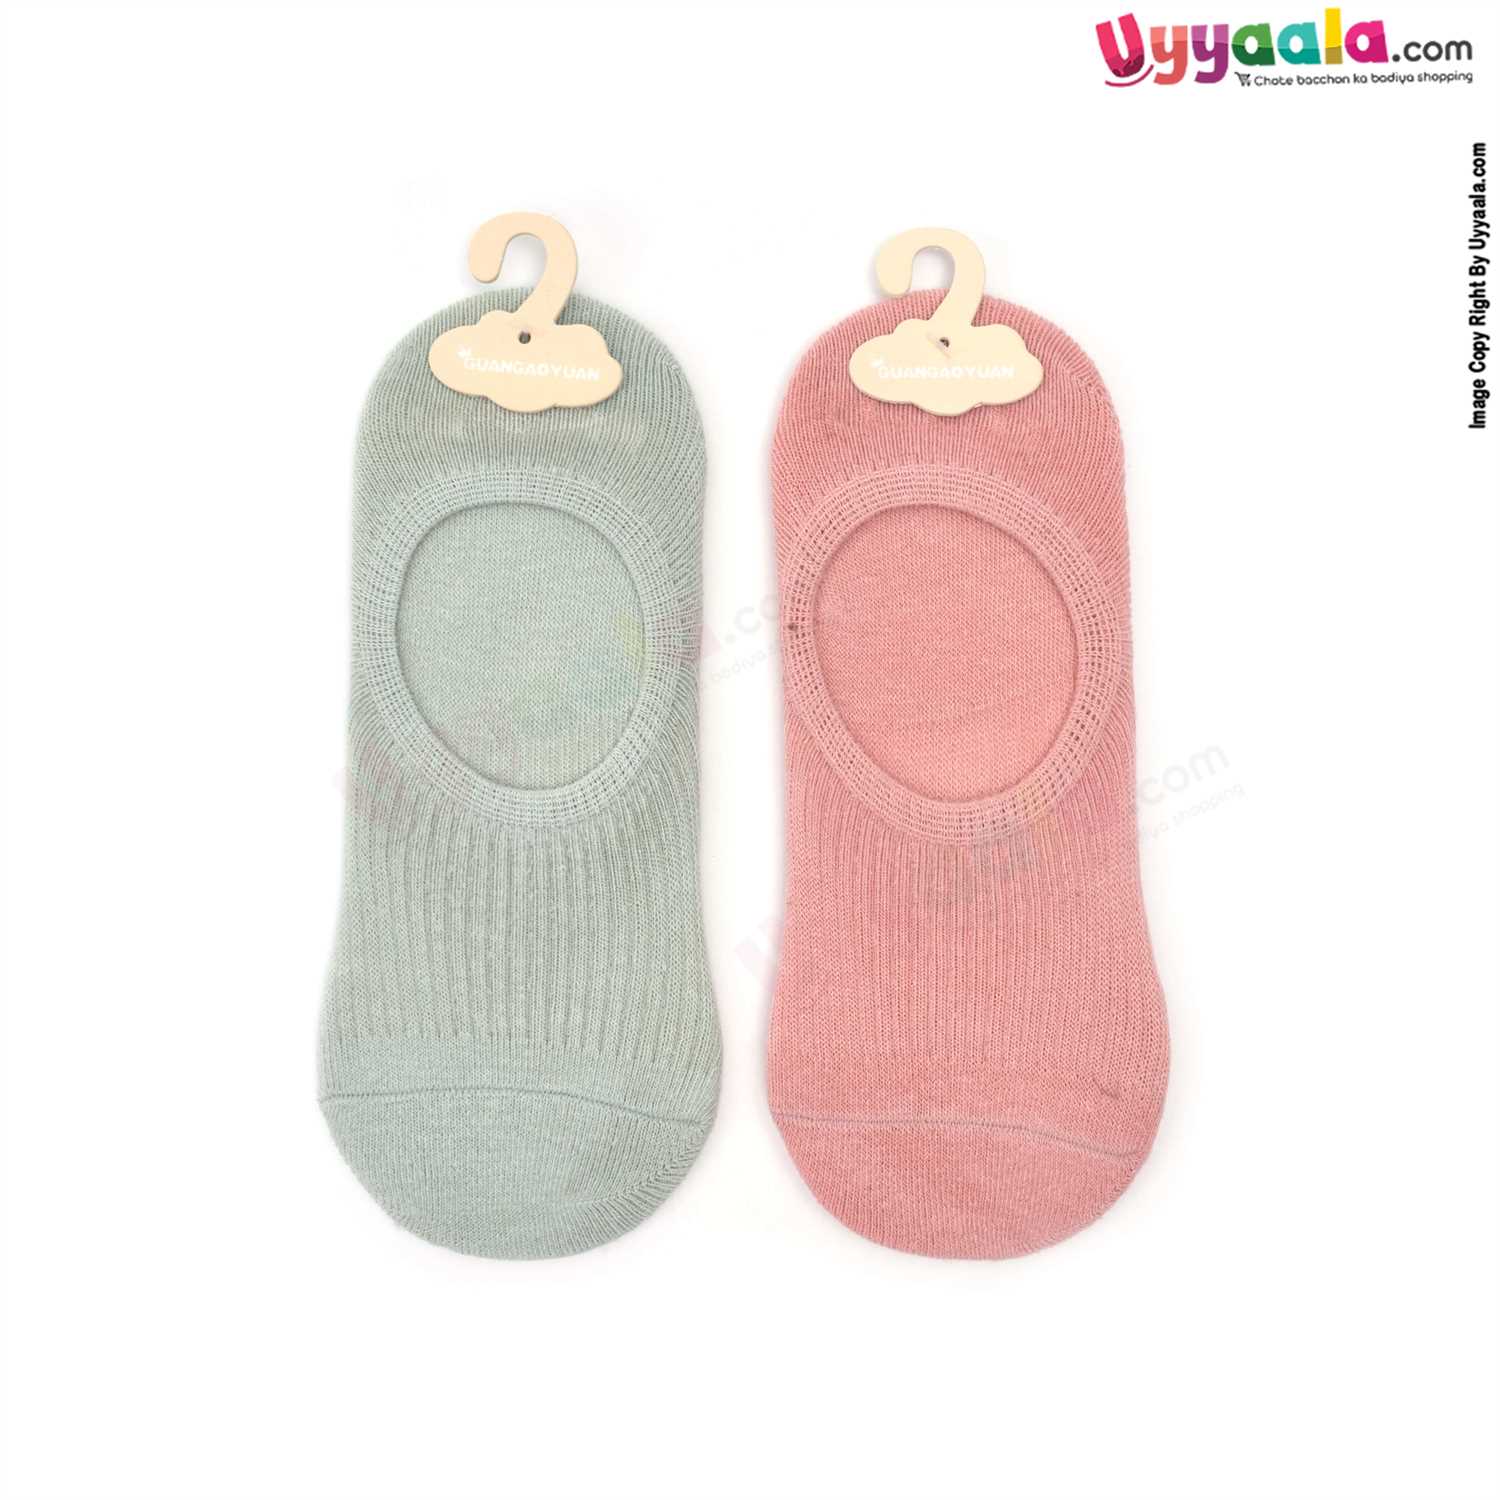 Hosiery Cotton Socks Low Cut Model Pack of 2, 4-8Y Age - Light Pink & Light Green